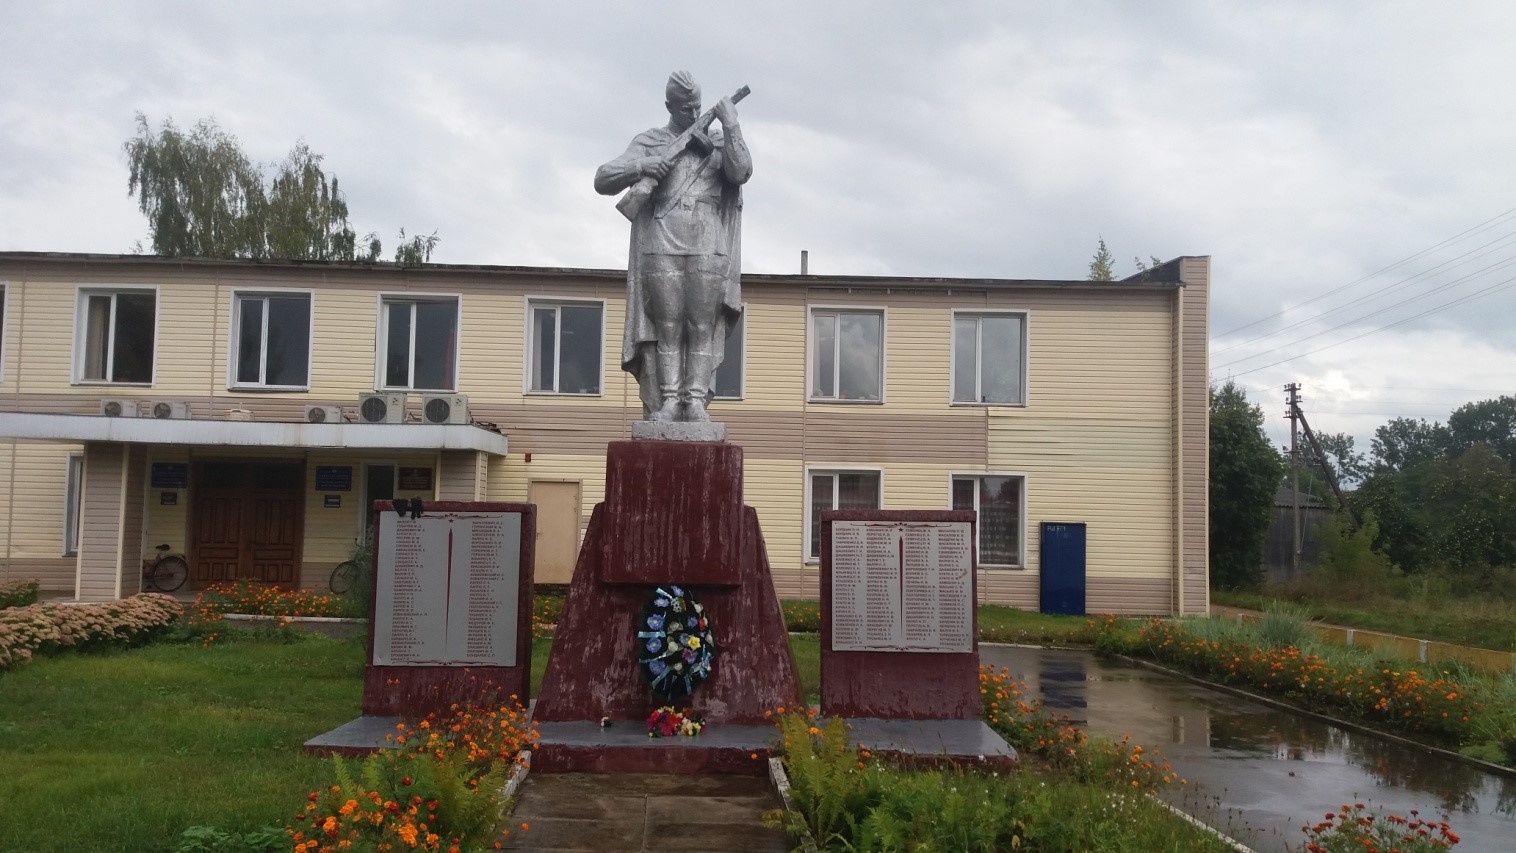 Памятник Землякам, расположенная в аг. Ржавка, Бешенковичский район, Витебская область